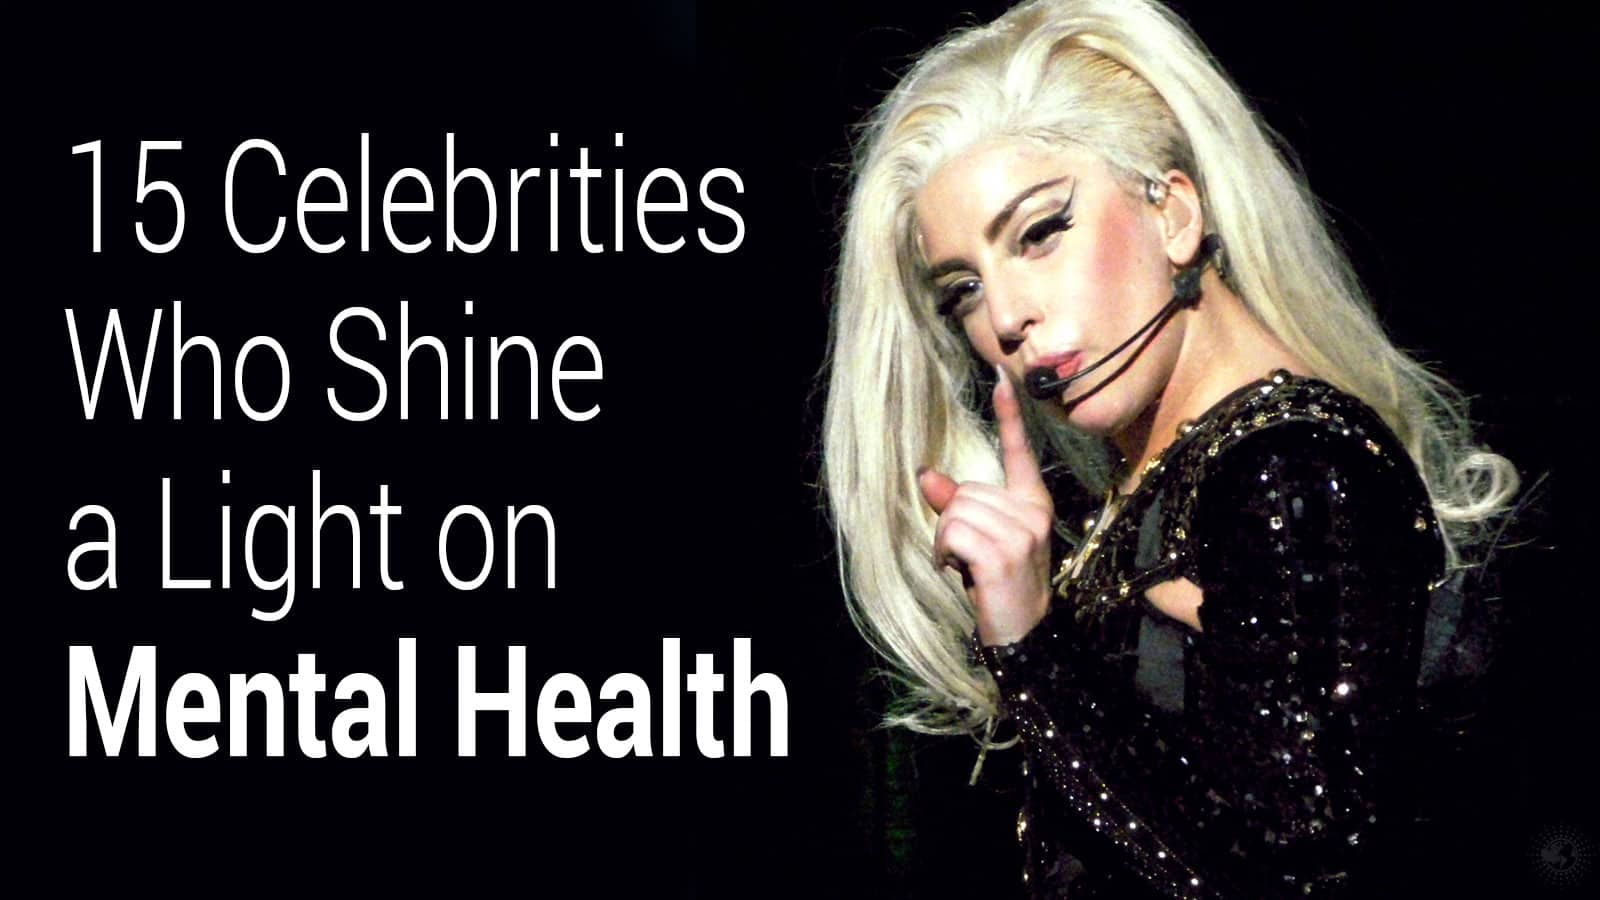 15 Celebrities Who Shine a Light on Mental Health